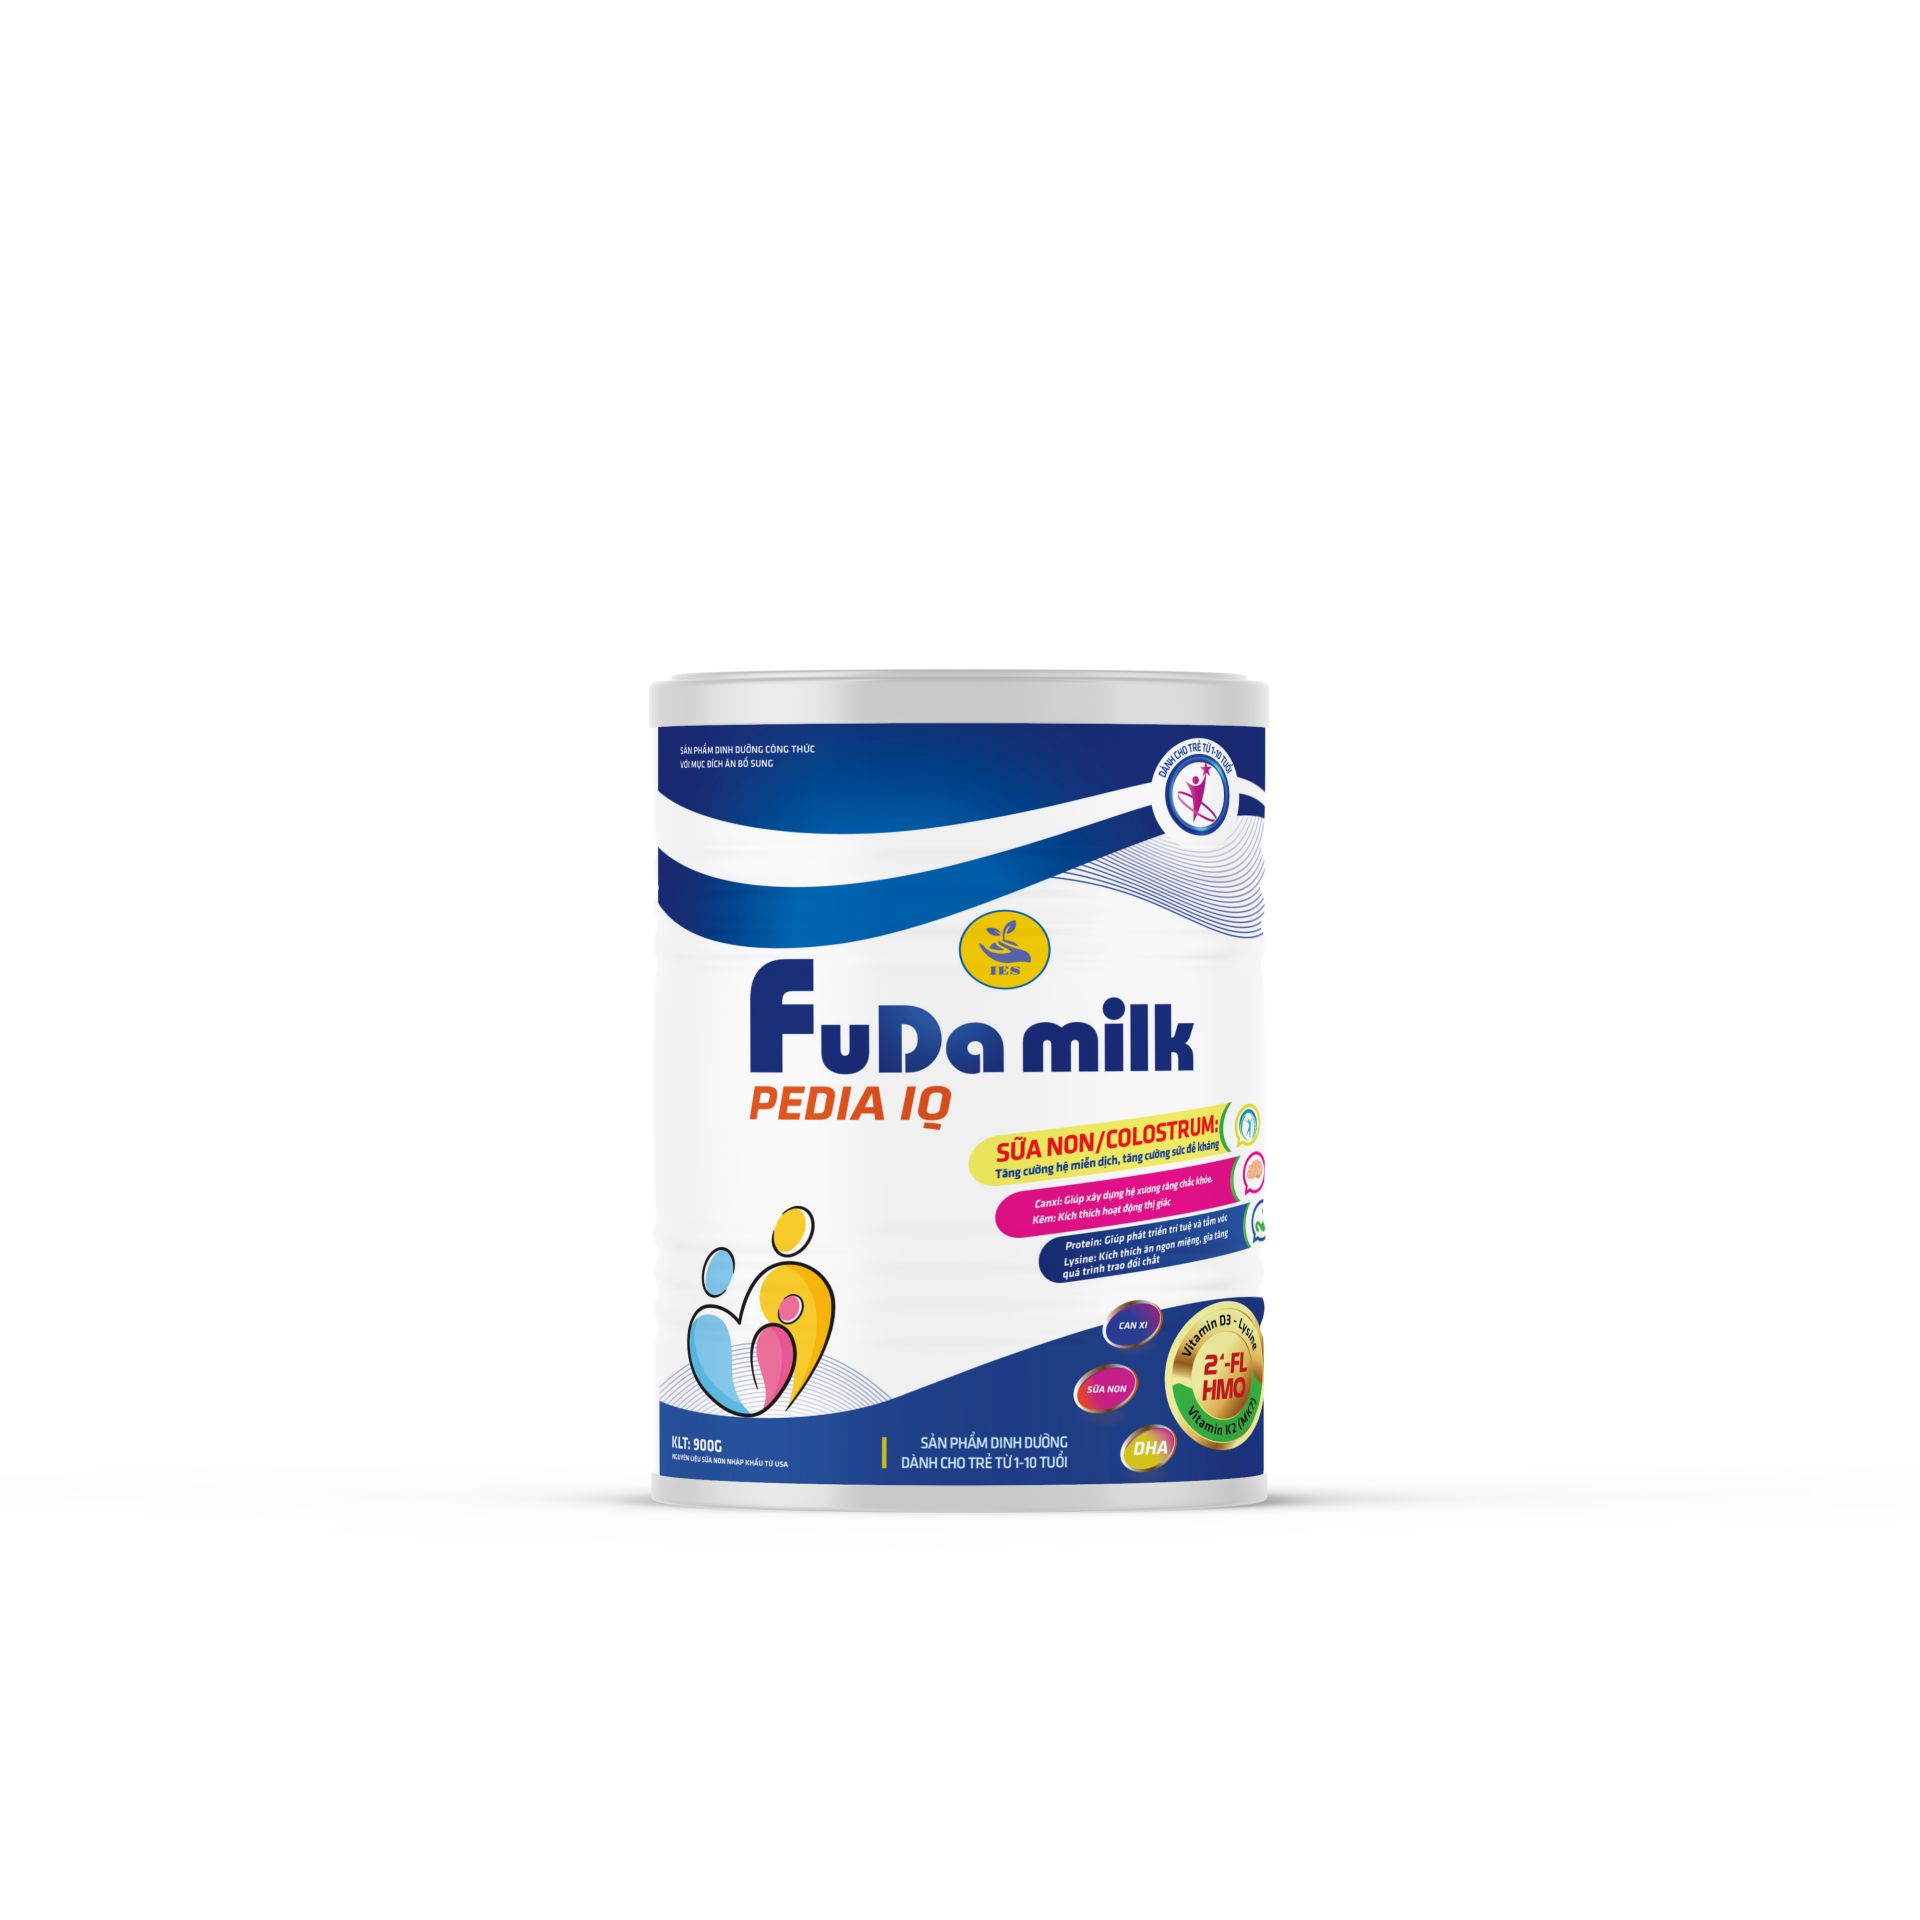 Fuda Milk Pedia IQ 400g( dành cho trẻ từ 1 - 10 tuổi )